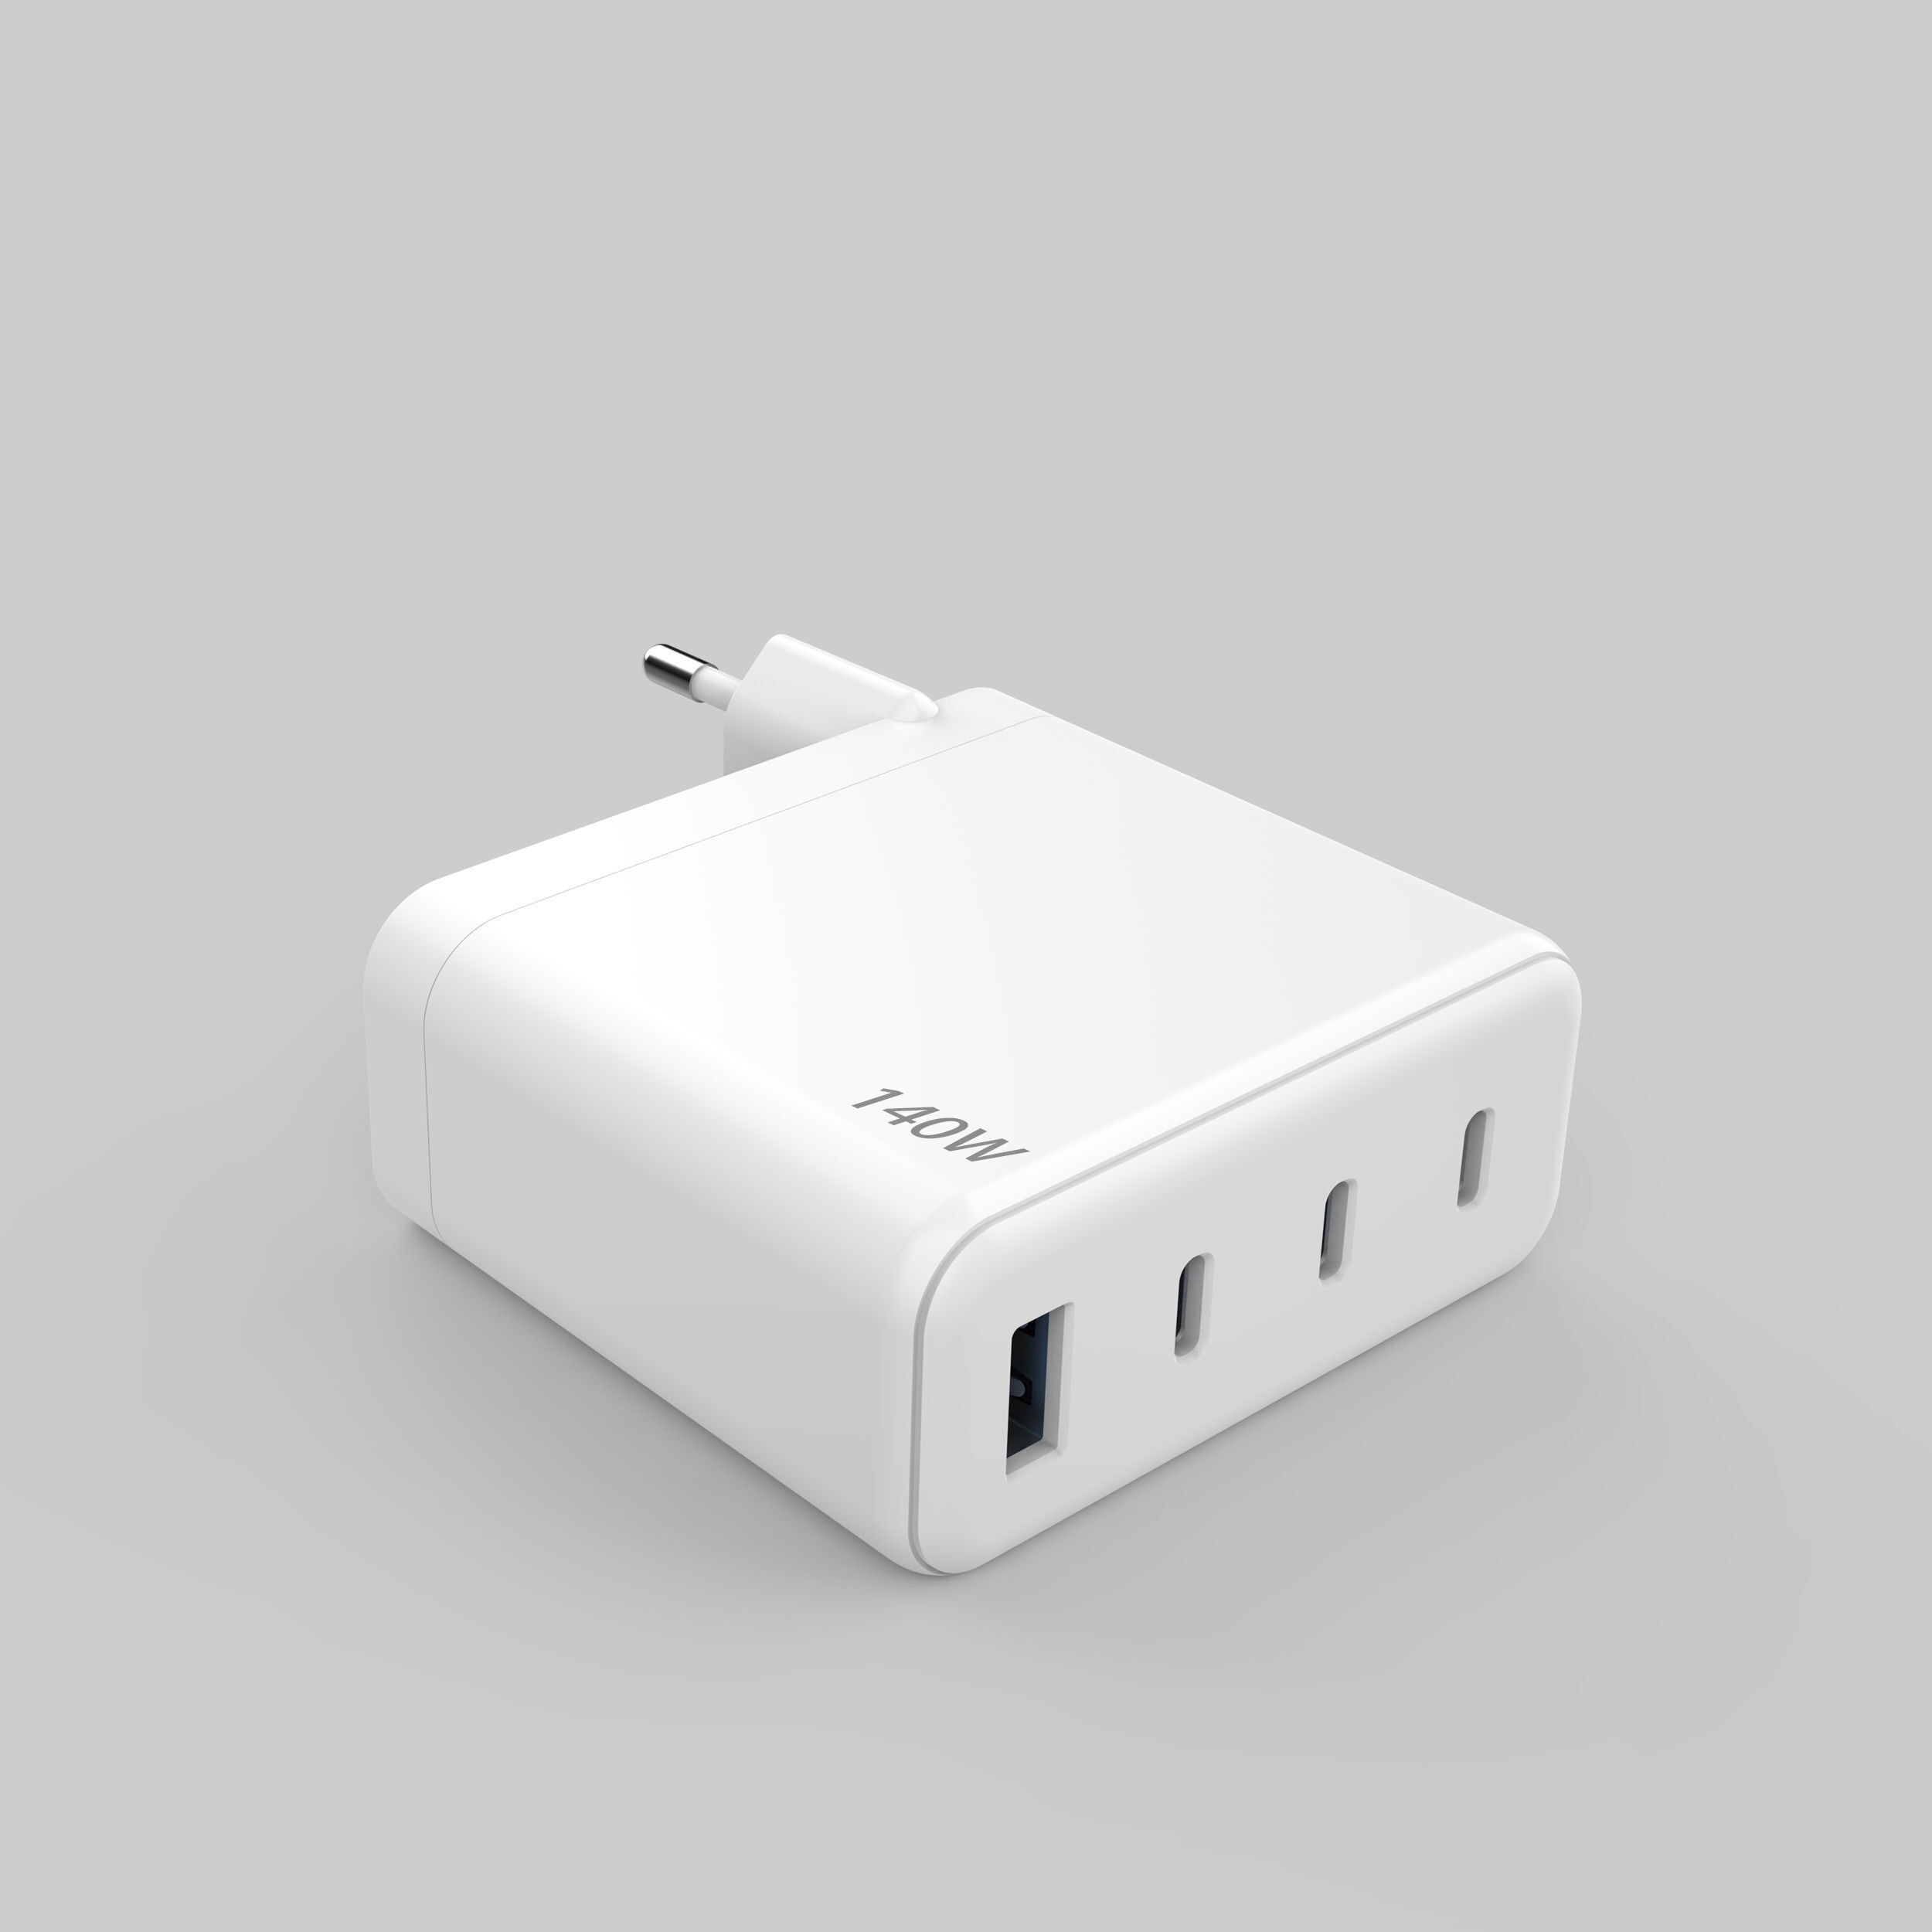 期間限定お試し価格 MiLi 140W USB C Charger, Ports GaN Desktop Charger, USB C Charging Station Compatible with MacBook Pro Air M1 M2, iPad Pro Air, iPhone 14 Pro Max 13